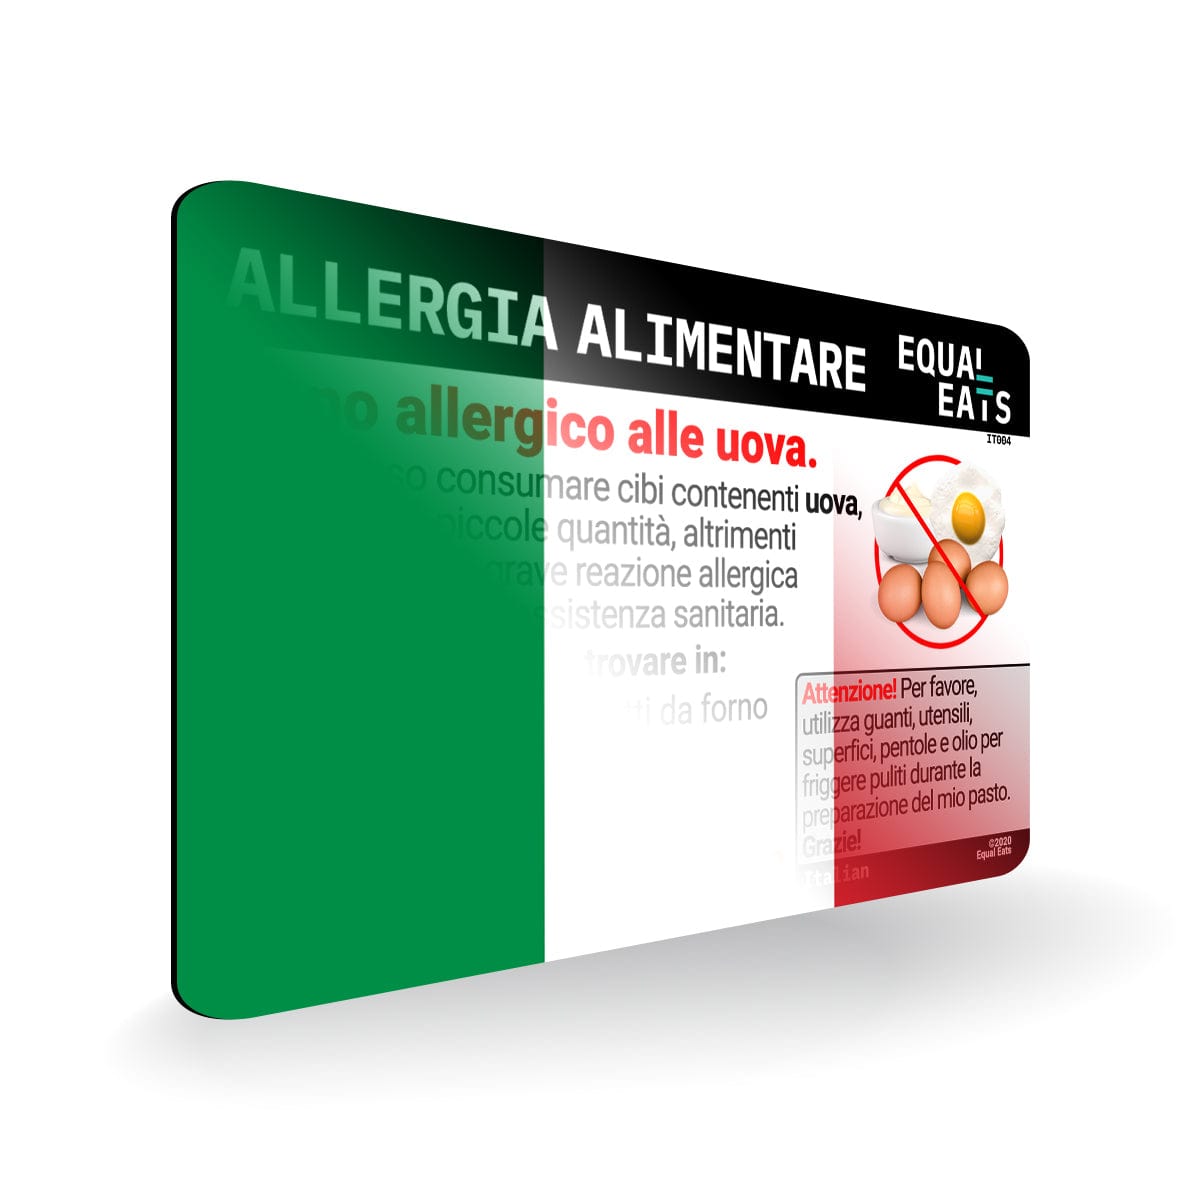 Egg Allergy in Italian. Egg Allergy Card for Italy